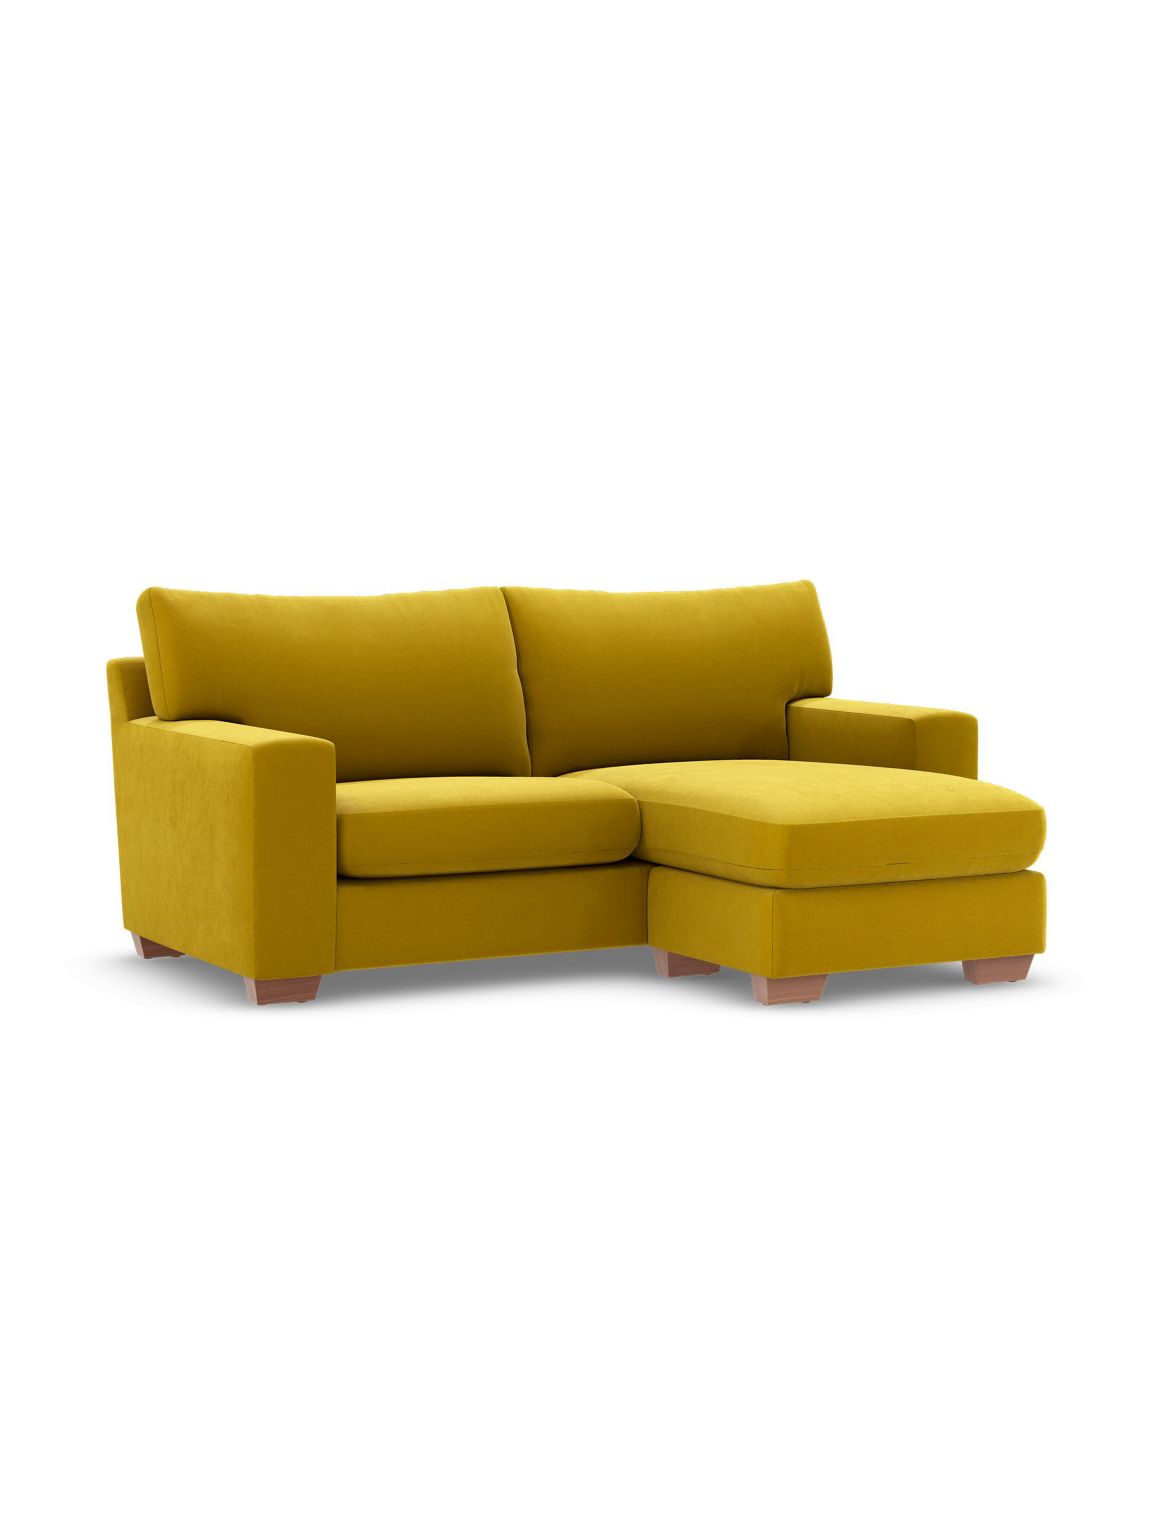 Alfie Corner Chaise Sofa yellow